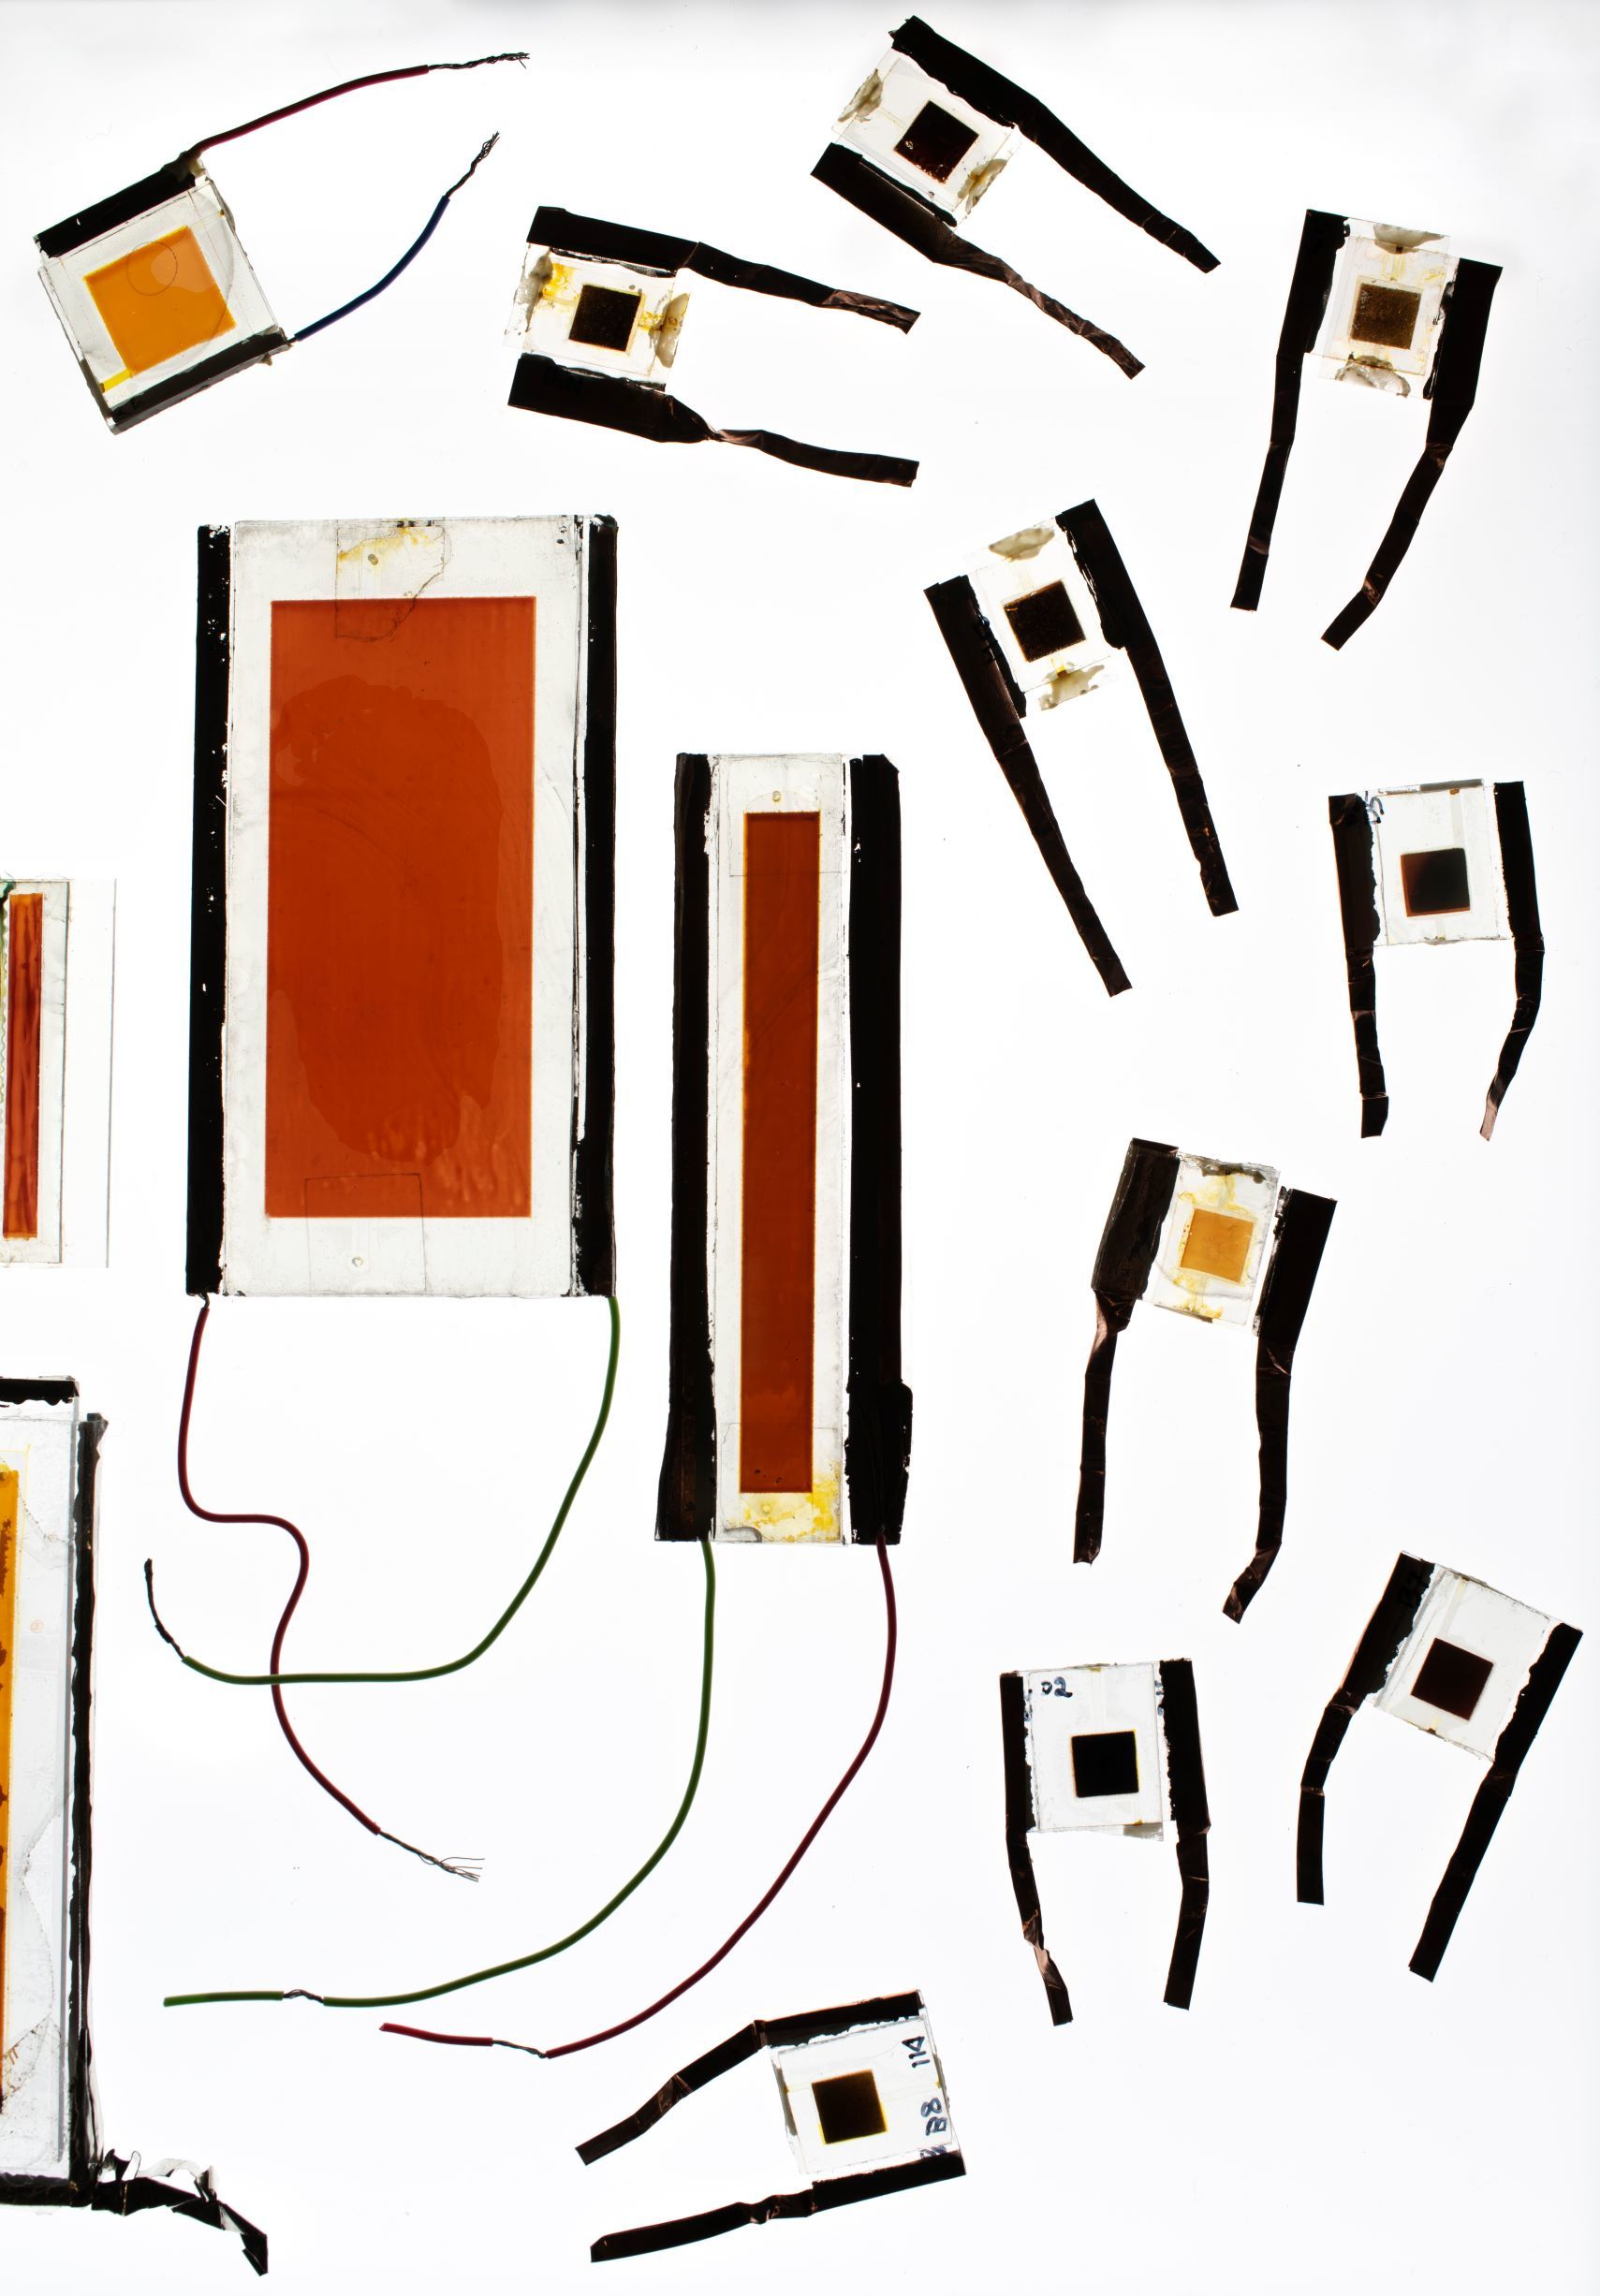 Janne Halme's archive solar cells